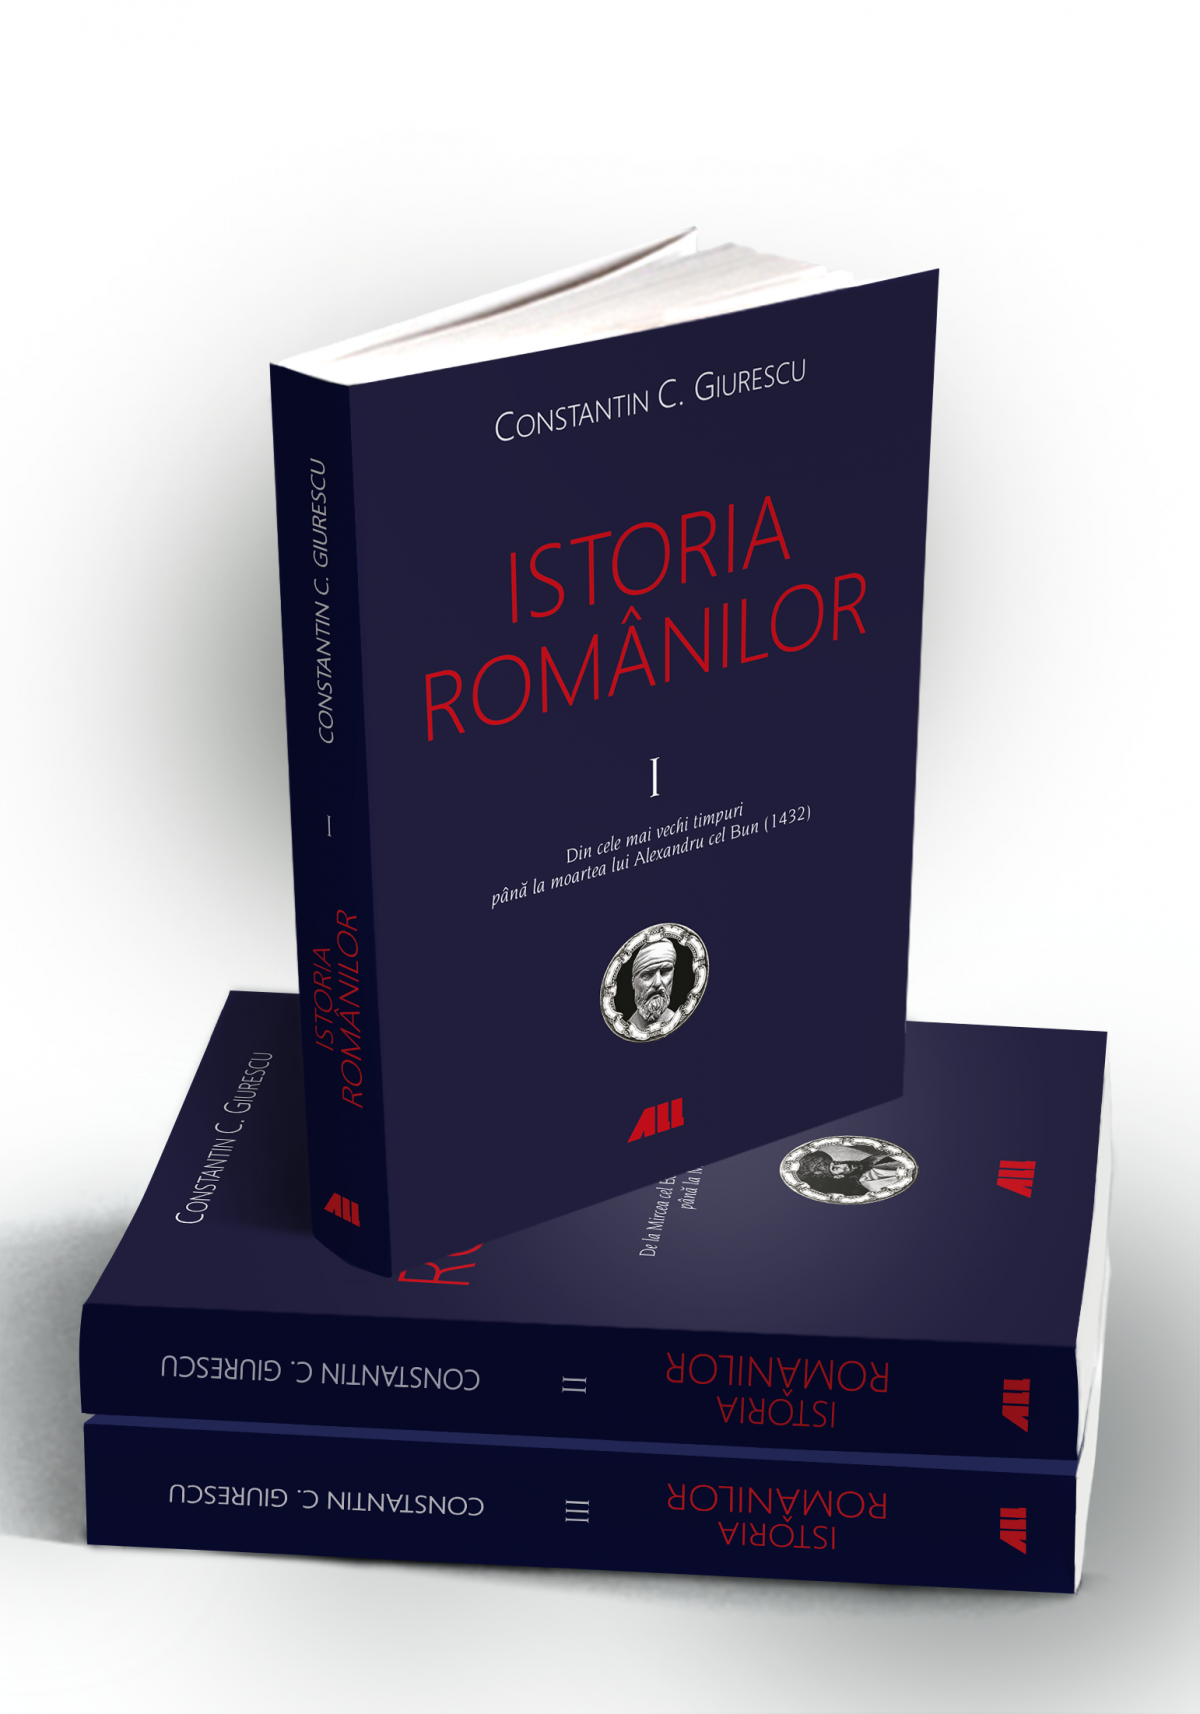 Istoria românilor (vol. I-III)